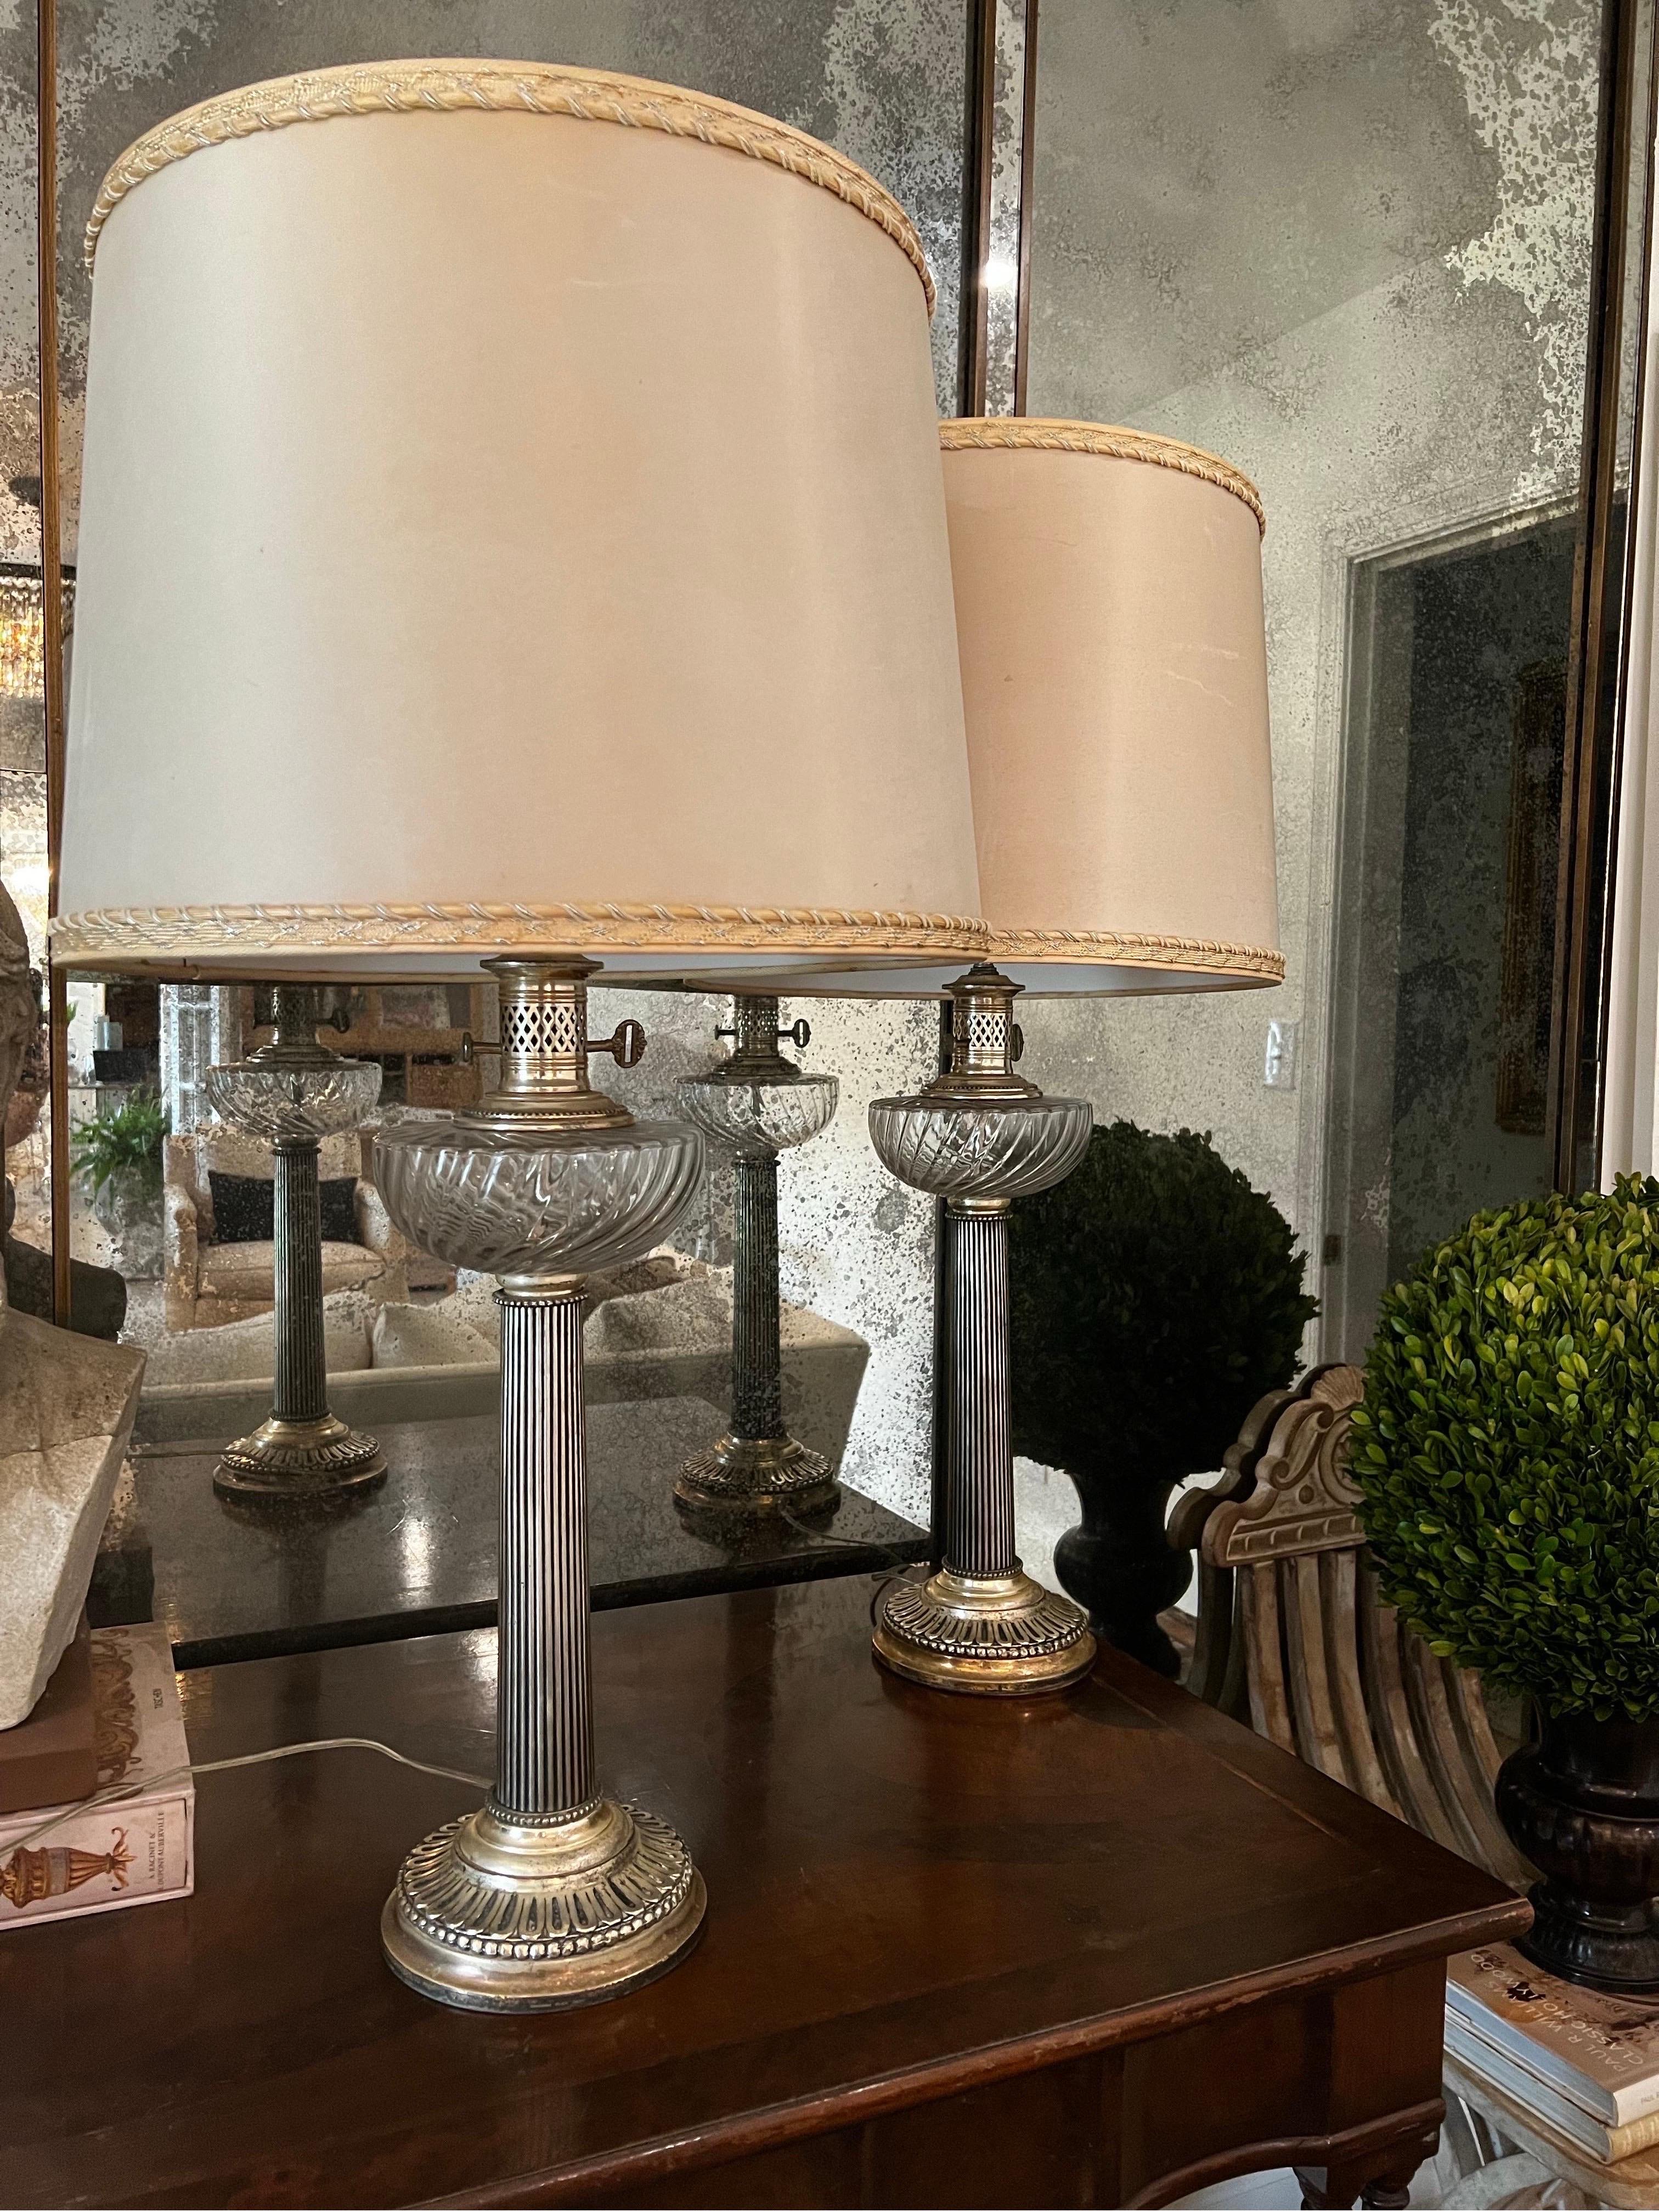 Bitte beachten Sie, dass die Lampenschirme NICHT enthalten sind. 

Ein Paar antike versilberte Tischlampen.  Ursprünglich Öllampen, die in elektrische Lampen umgewandelt wurden.
